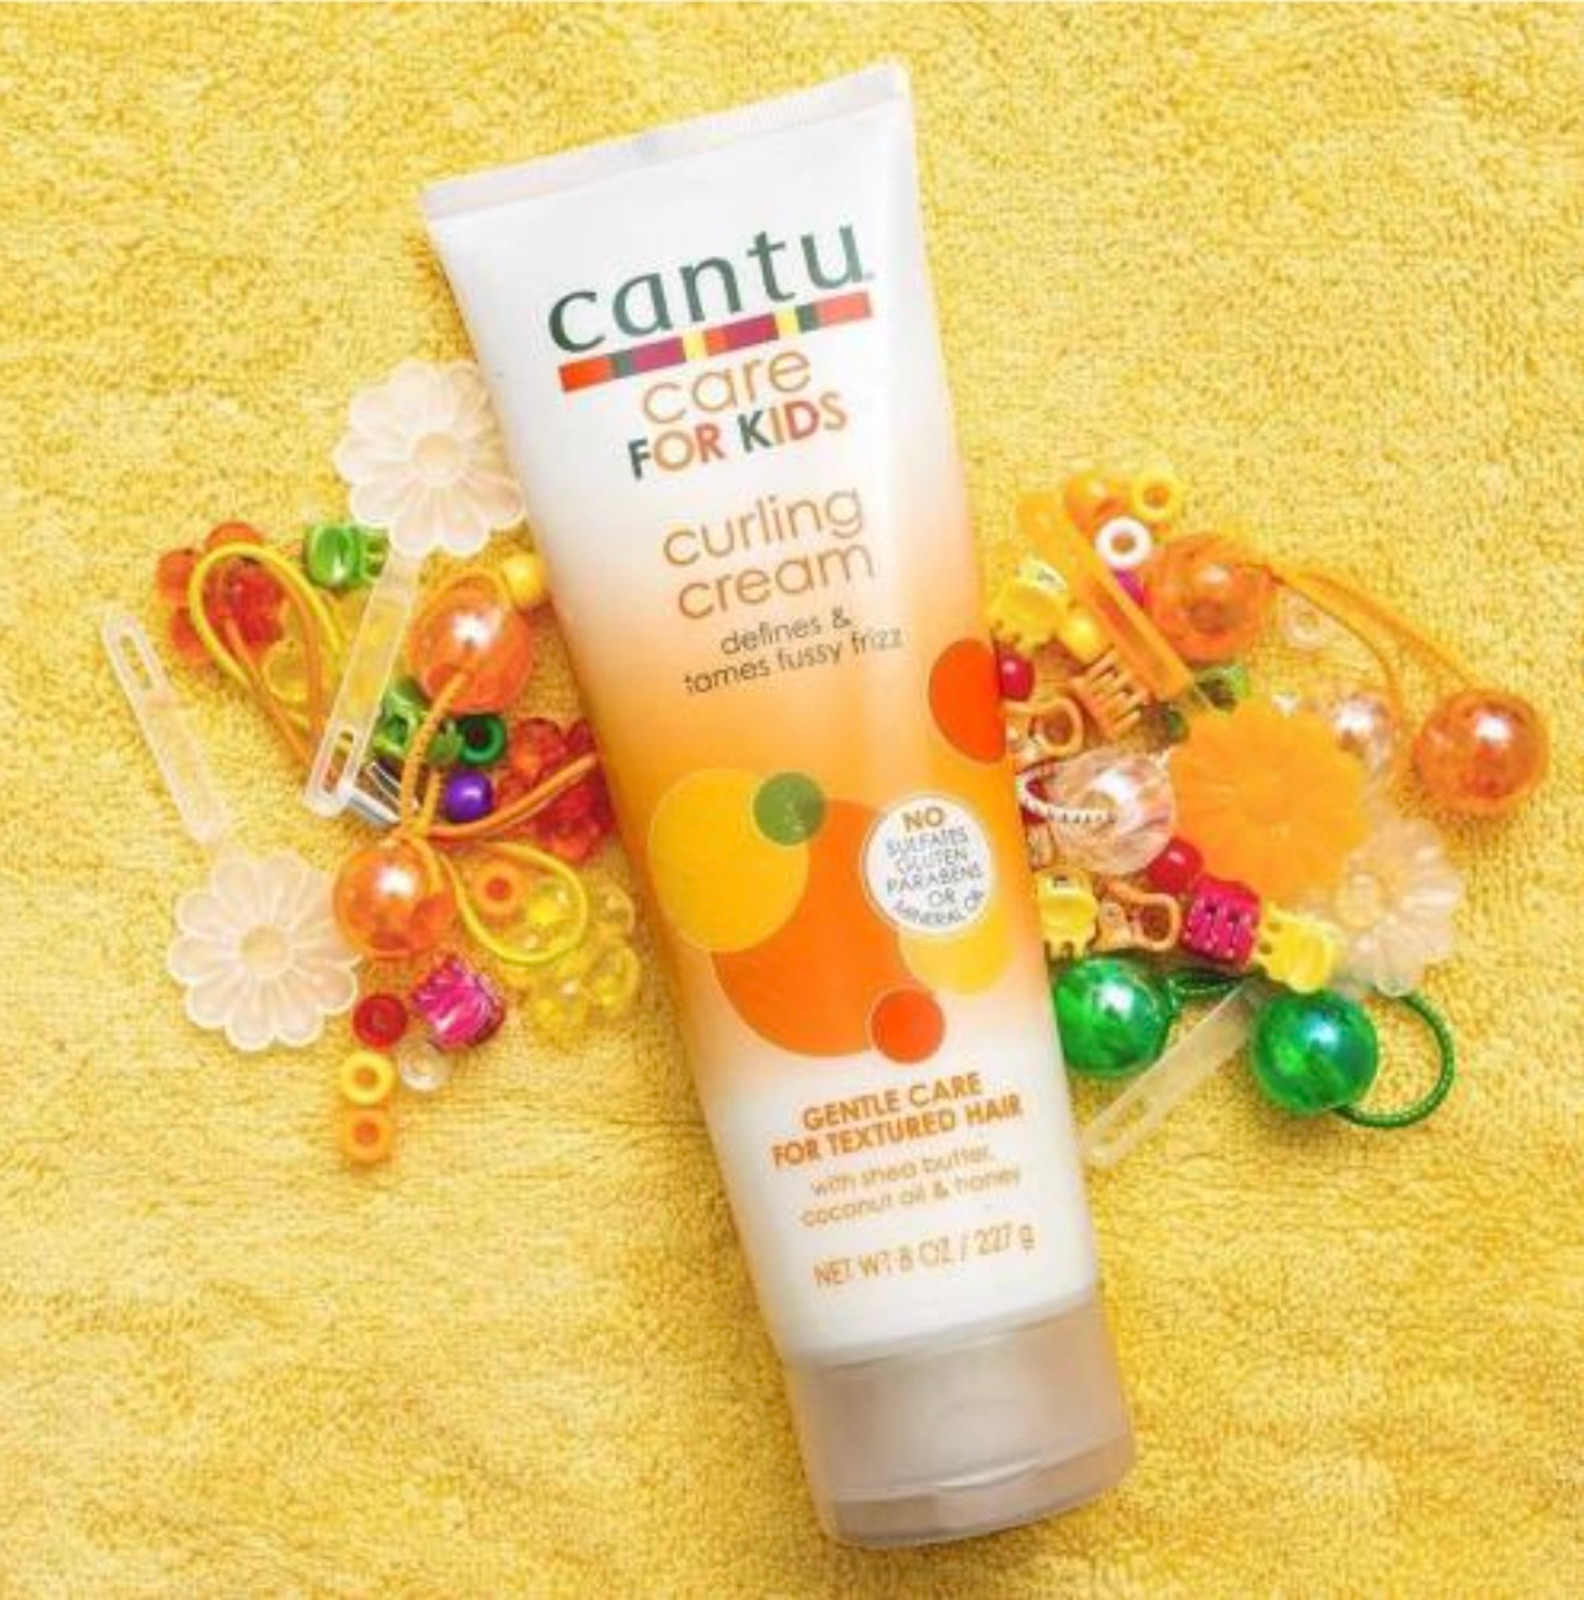 Cantu Care for Kids Curling Cream